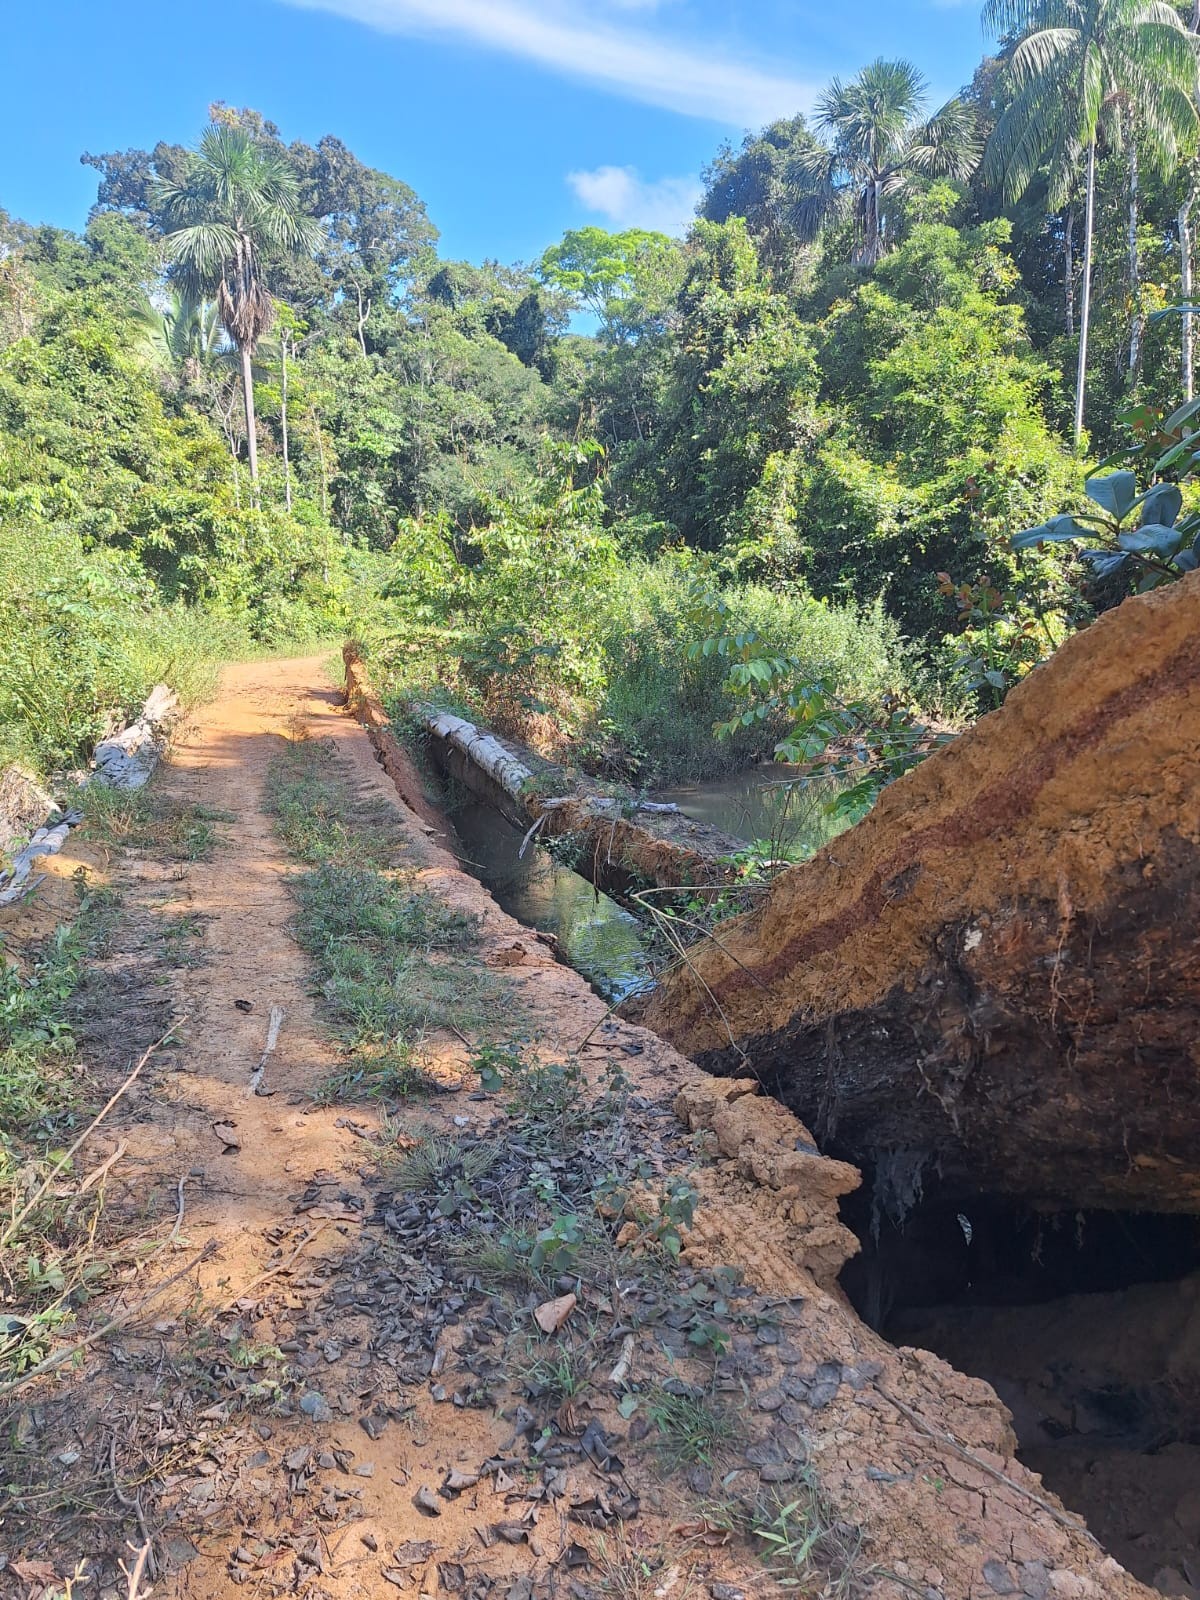 Indígenas Karipuna ficam isolados após única ponte de acesso à aldeia ser destruída por invasores, diz liderança 